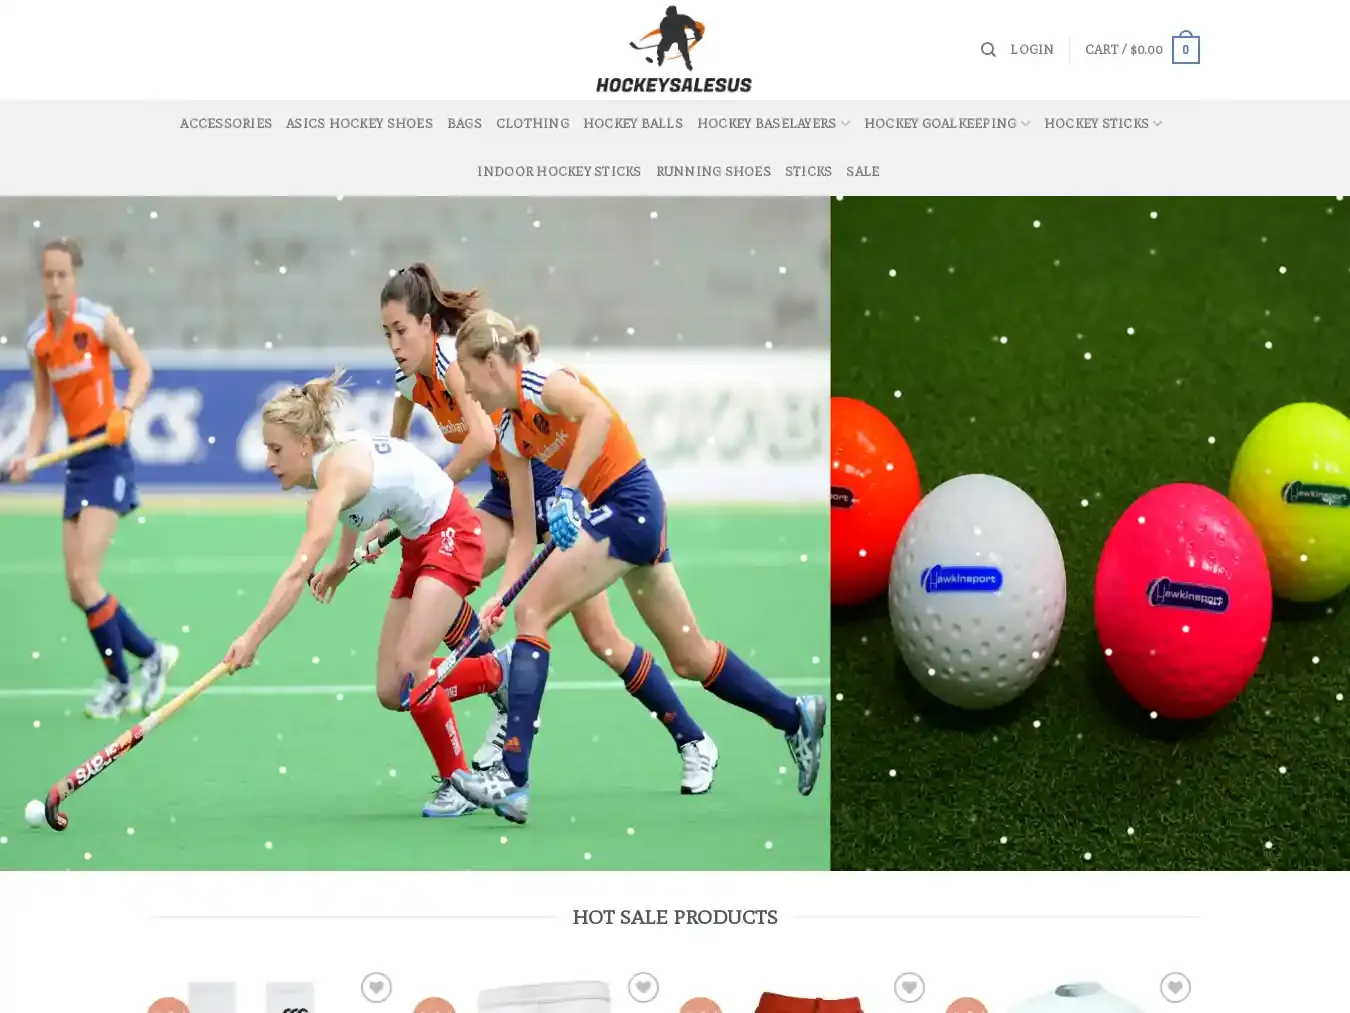 Hockeysalesus.com Fraudulent Sport website.